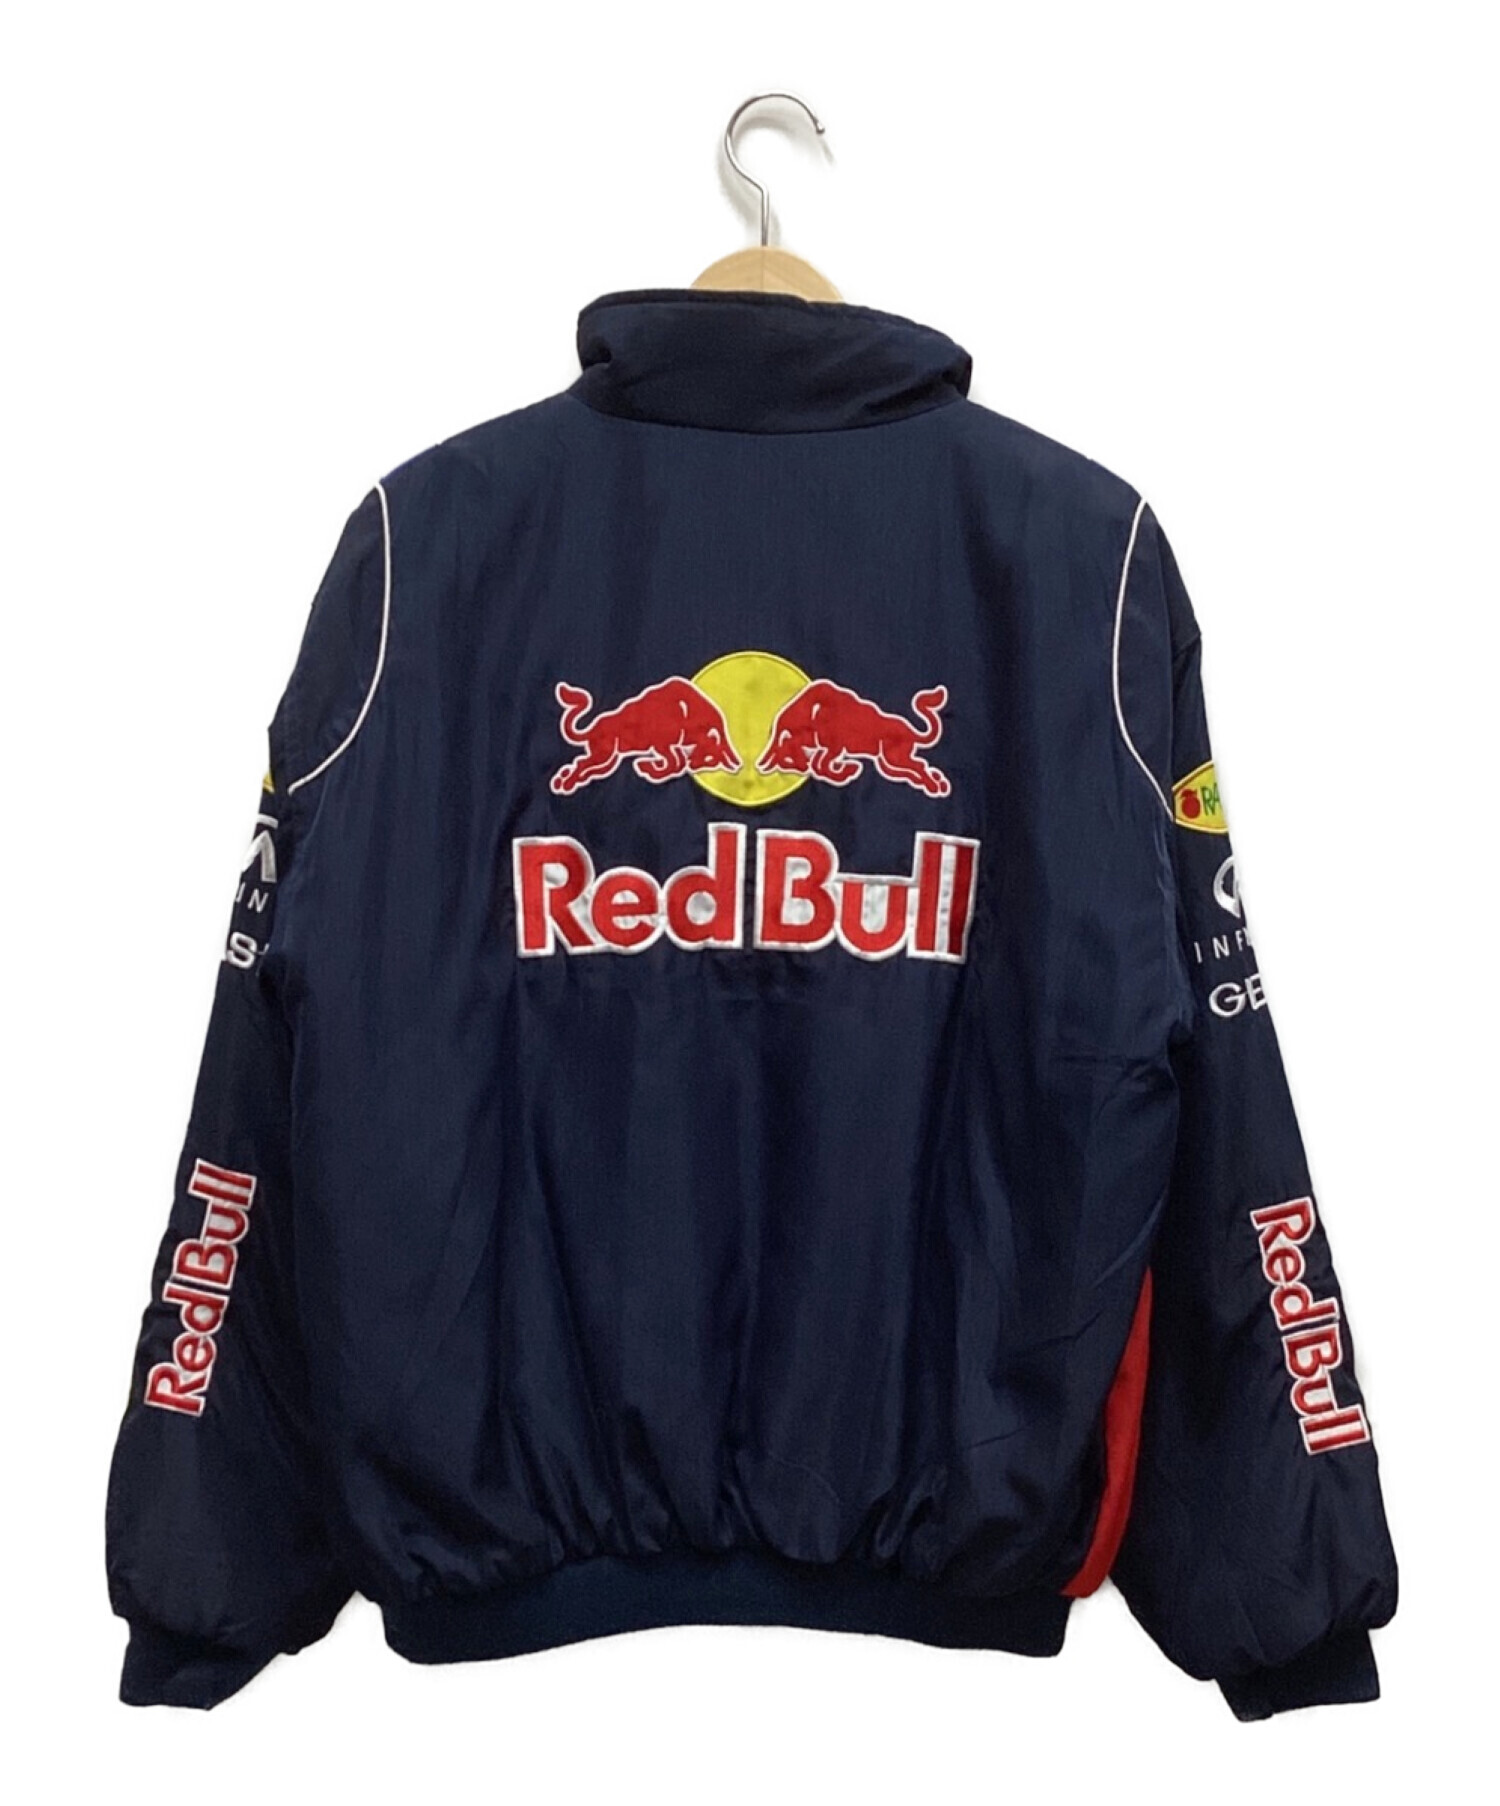 レーシングジャケット レッドブル Red Bull サイズS着丈69cm - ブルゾン